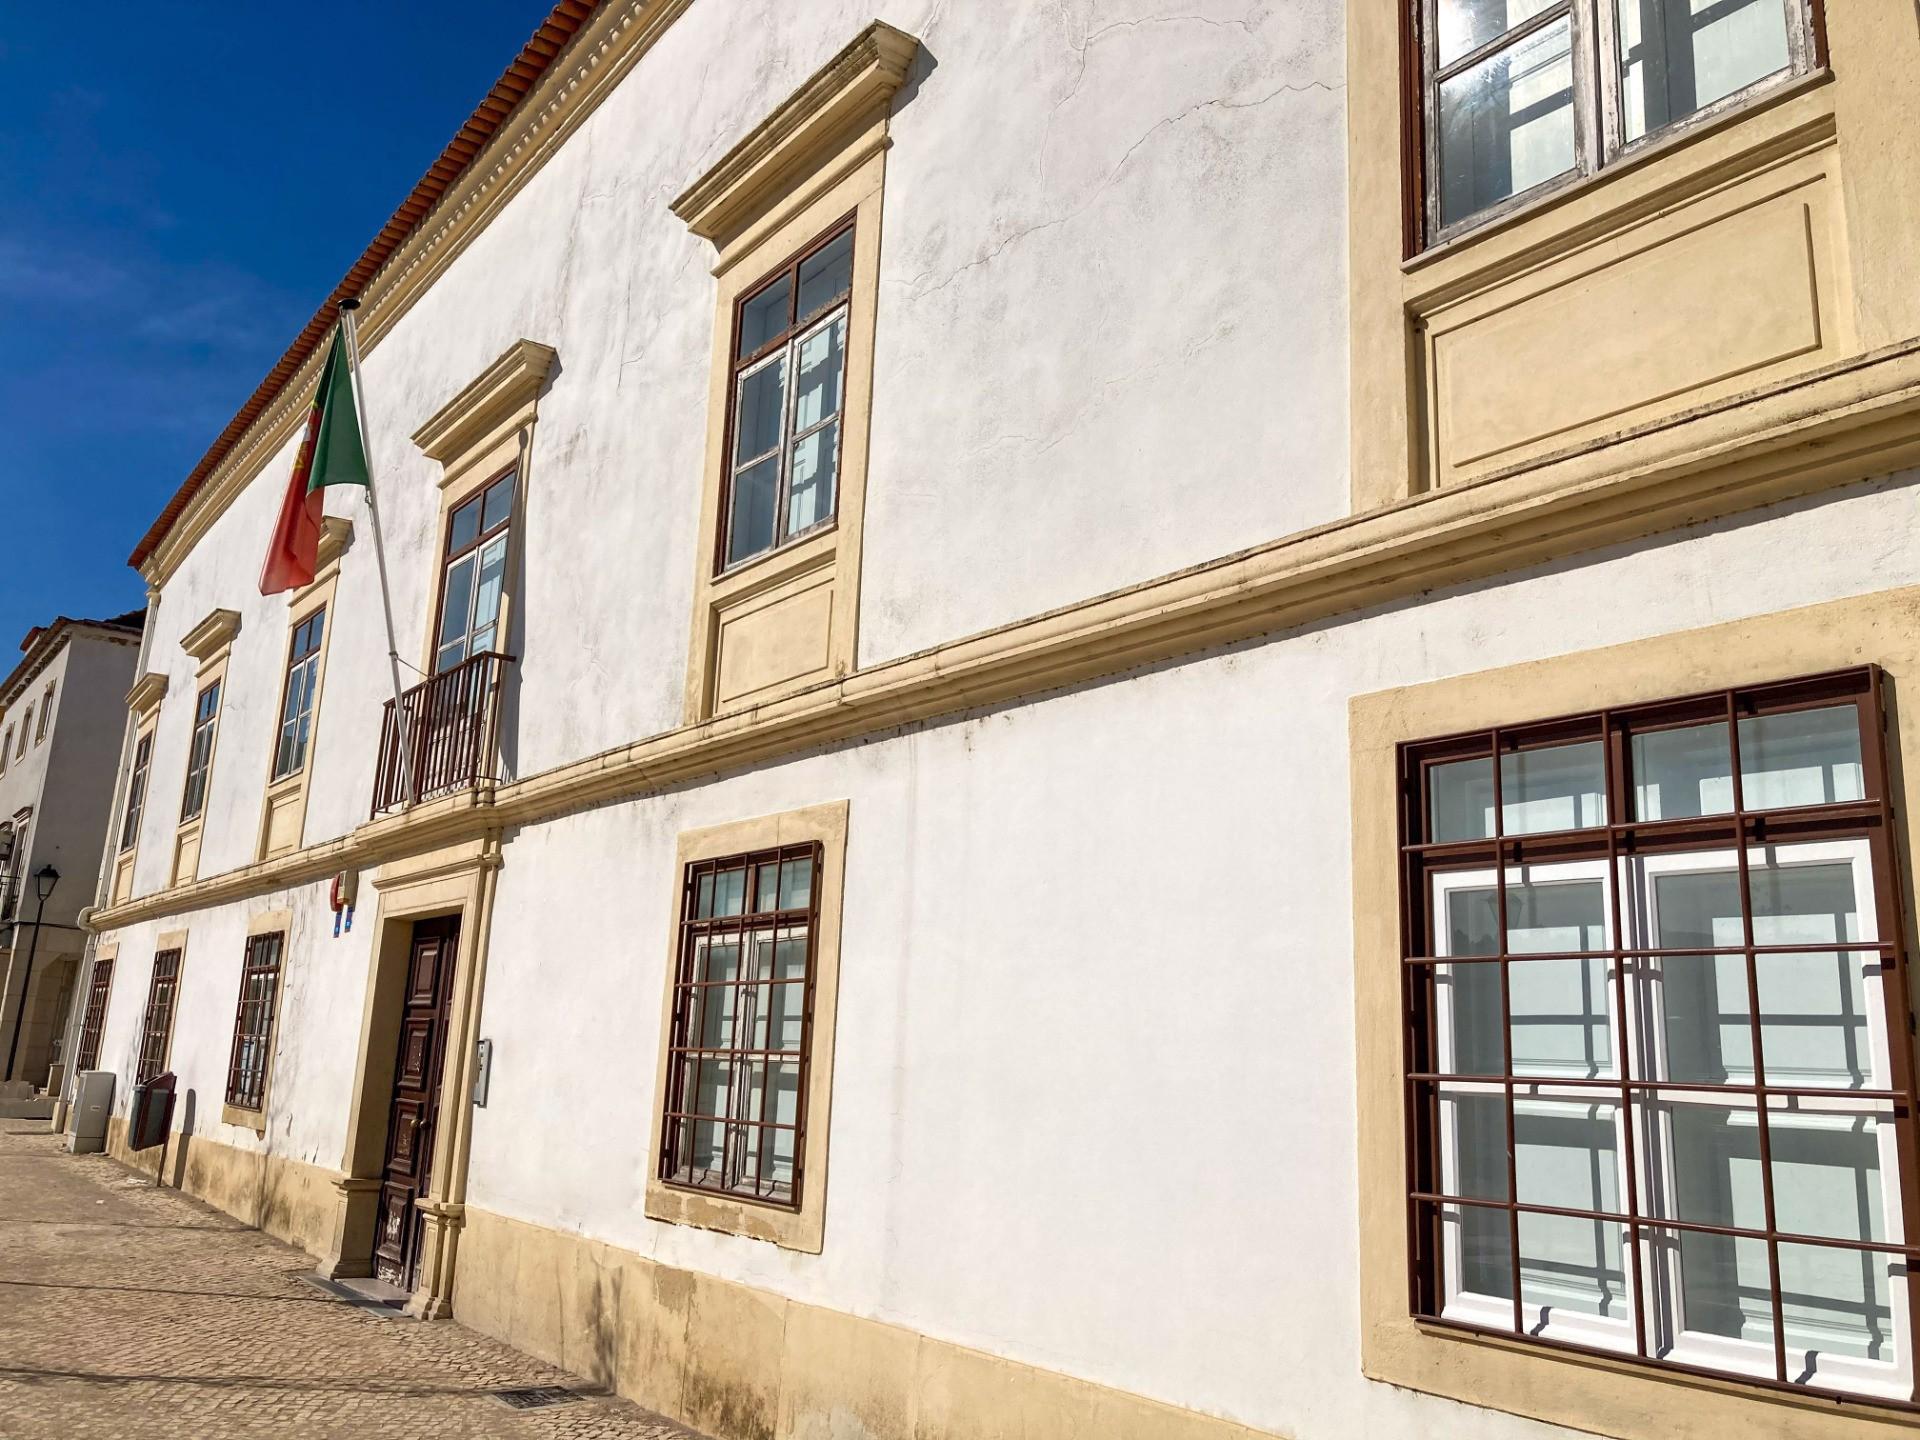 Fachada - O Palácio de Alvaiázere, situado no centro histórico de Tomar, perto da antiga Várzea Grande, reveste-se de grande interesse arquitetónico, histórico e cultural para a cidade, sendo um registo do seu desenvolvimento e evolução através dos séculos.